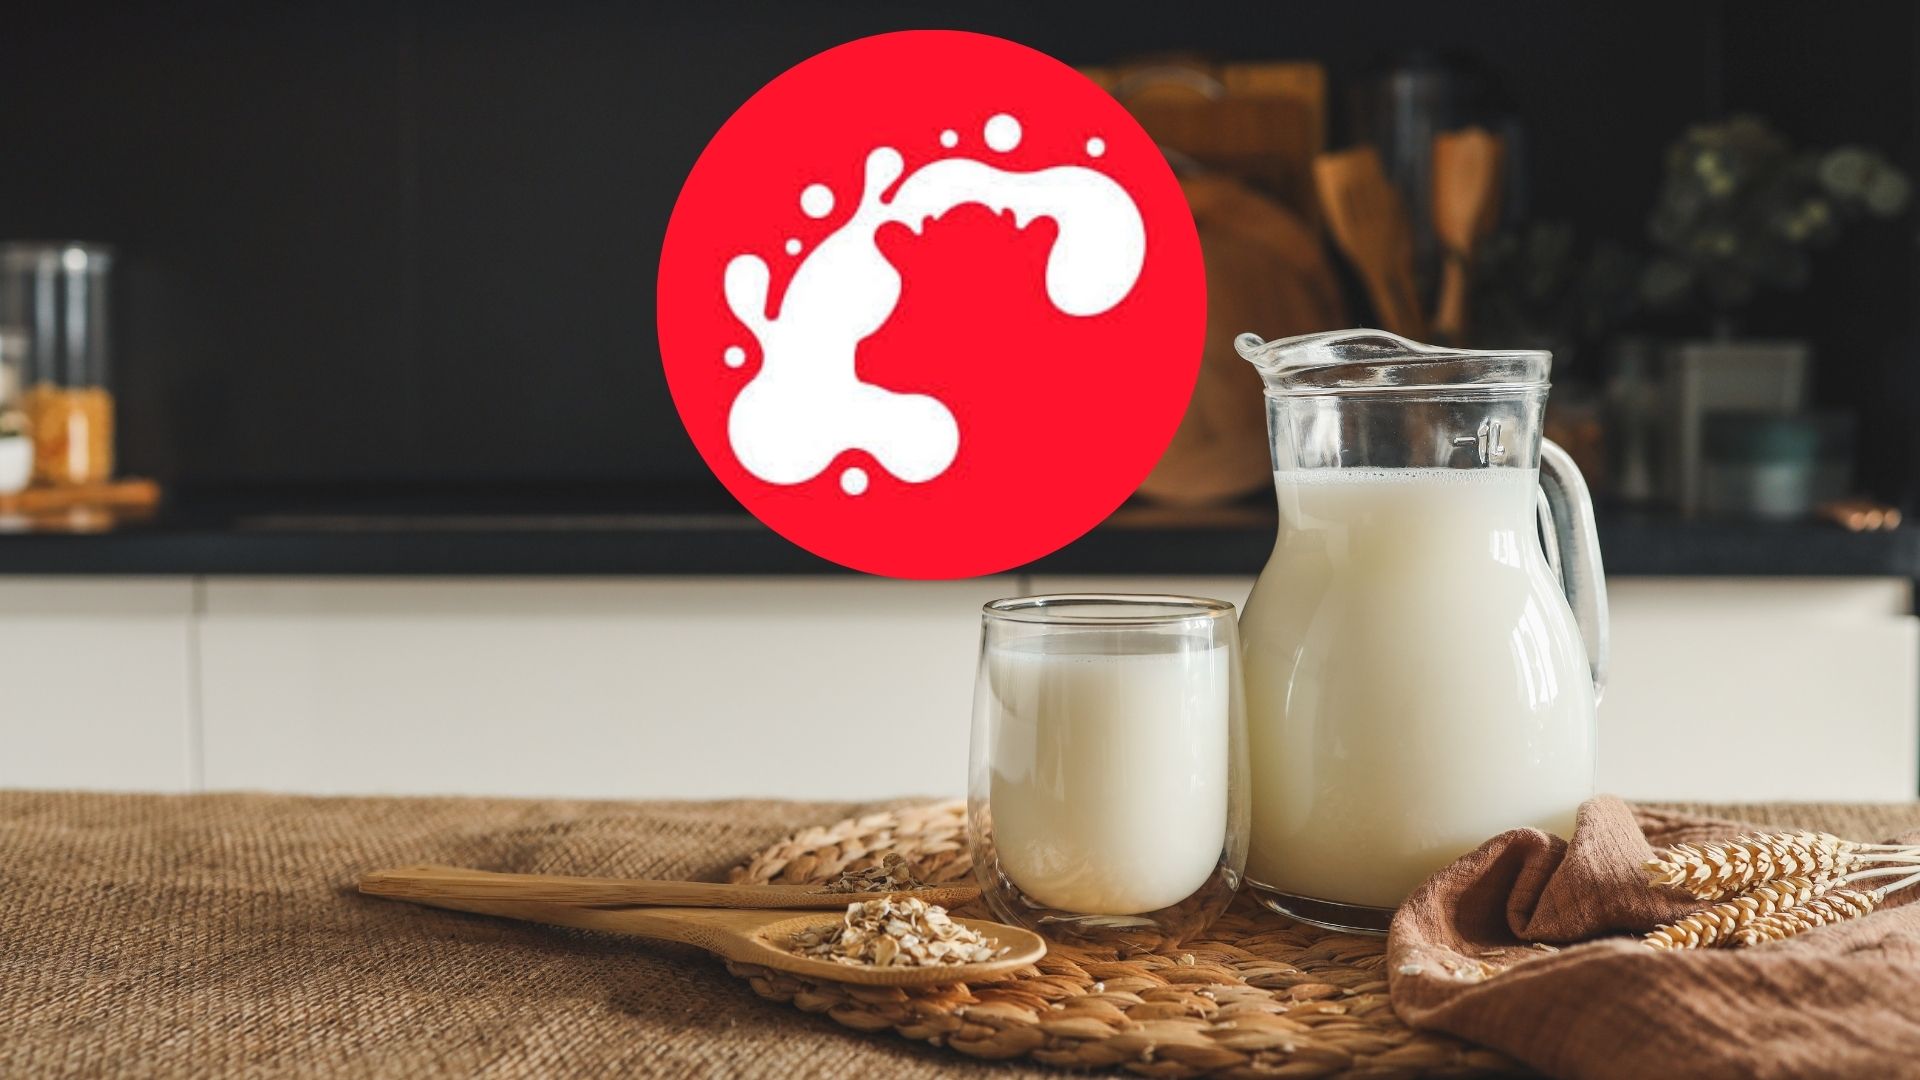 Imagen de leche por nota sobre Alquería en Colombia